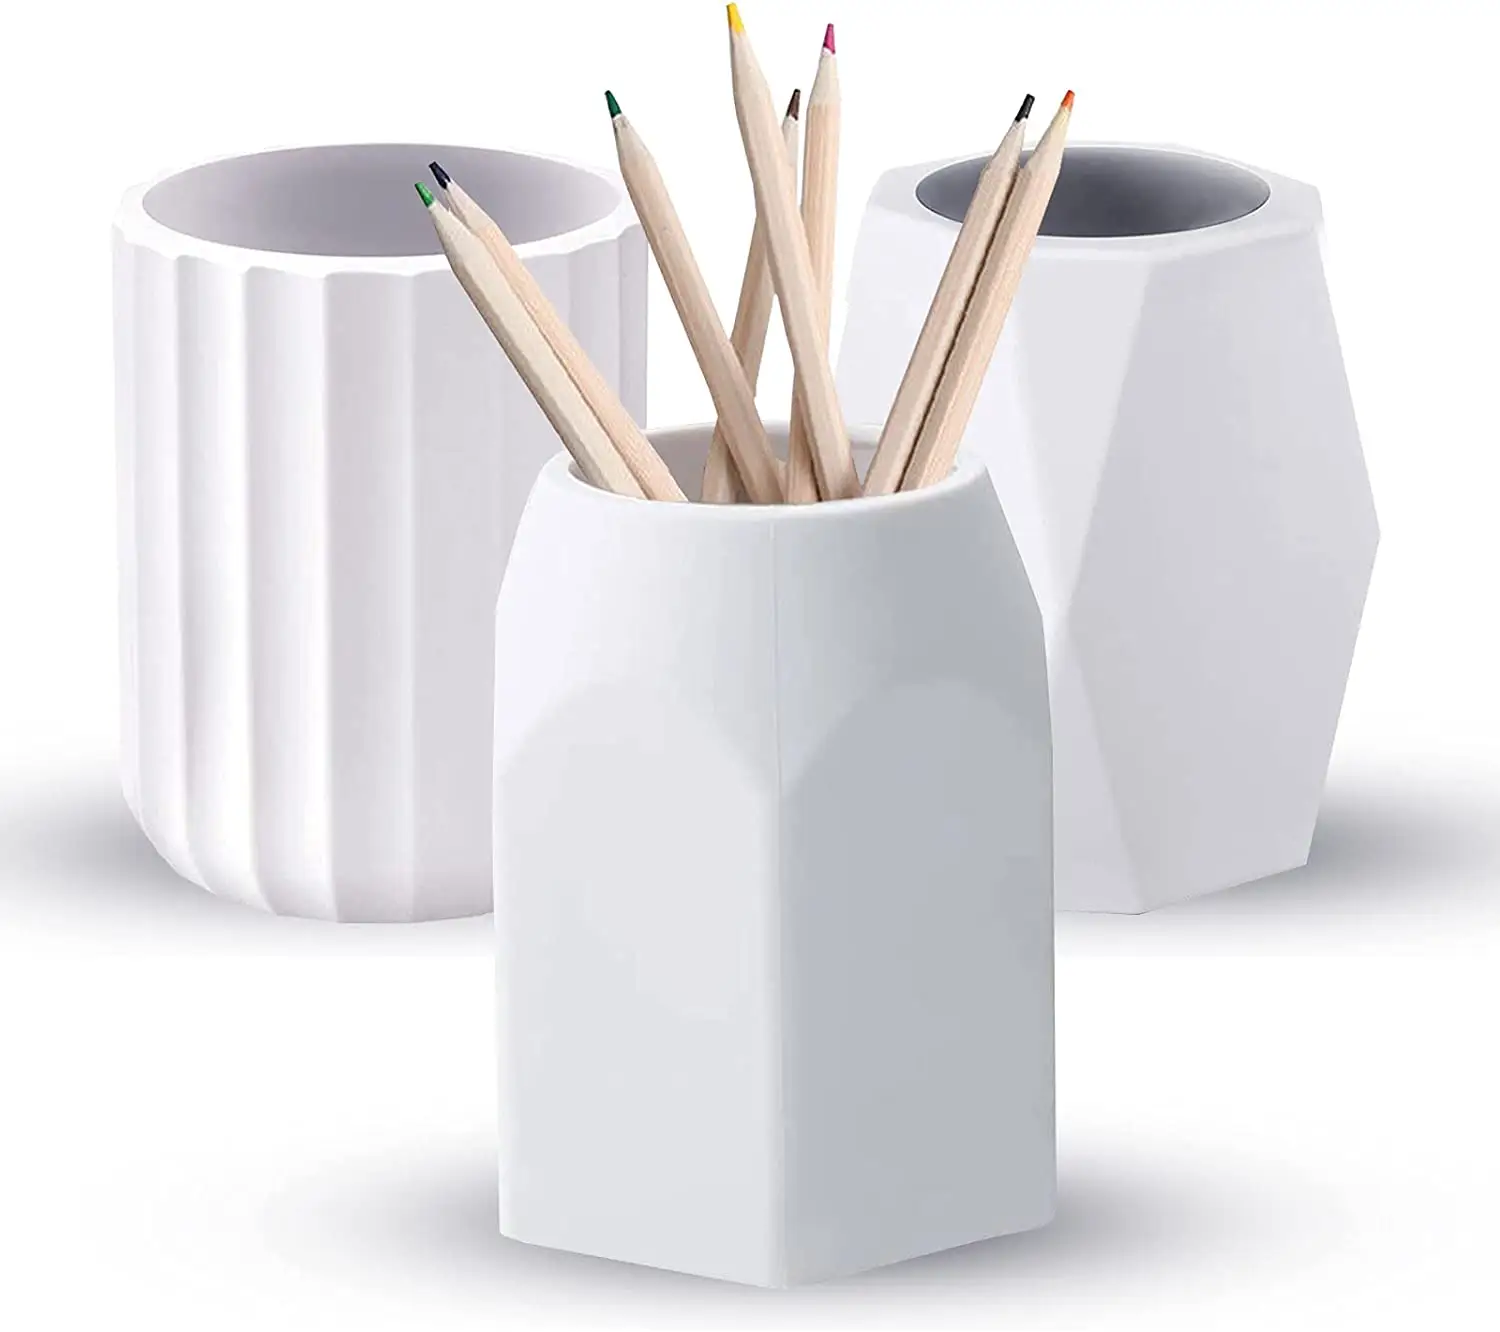 2022 kalemlik yaratıcı tasarım silikon kalem bardak masaüstü masaüstü düzenleyici kalem konteyner